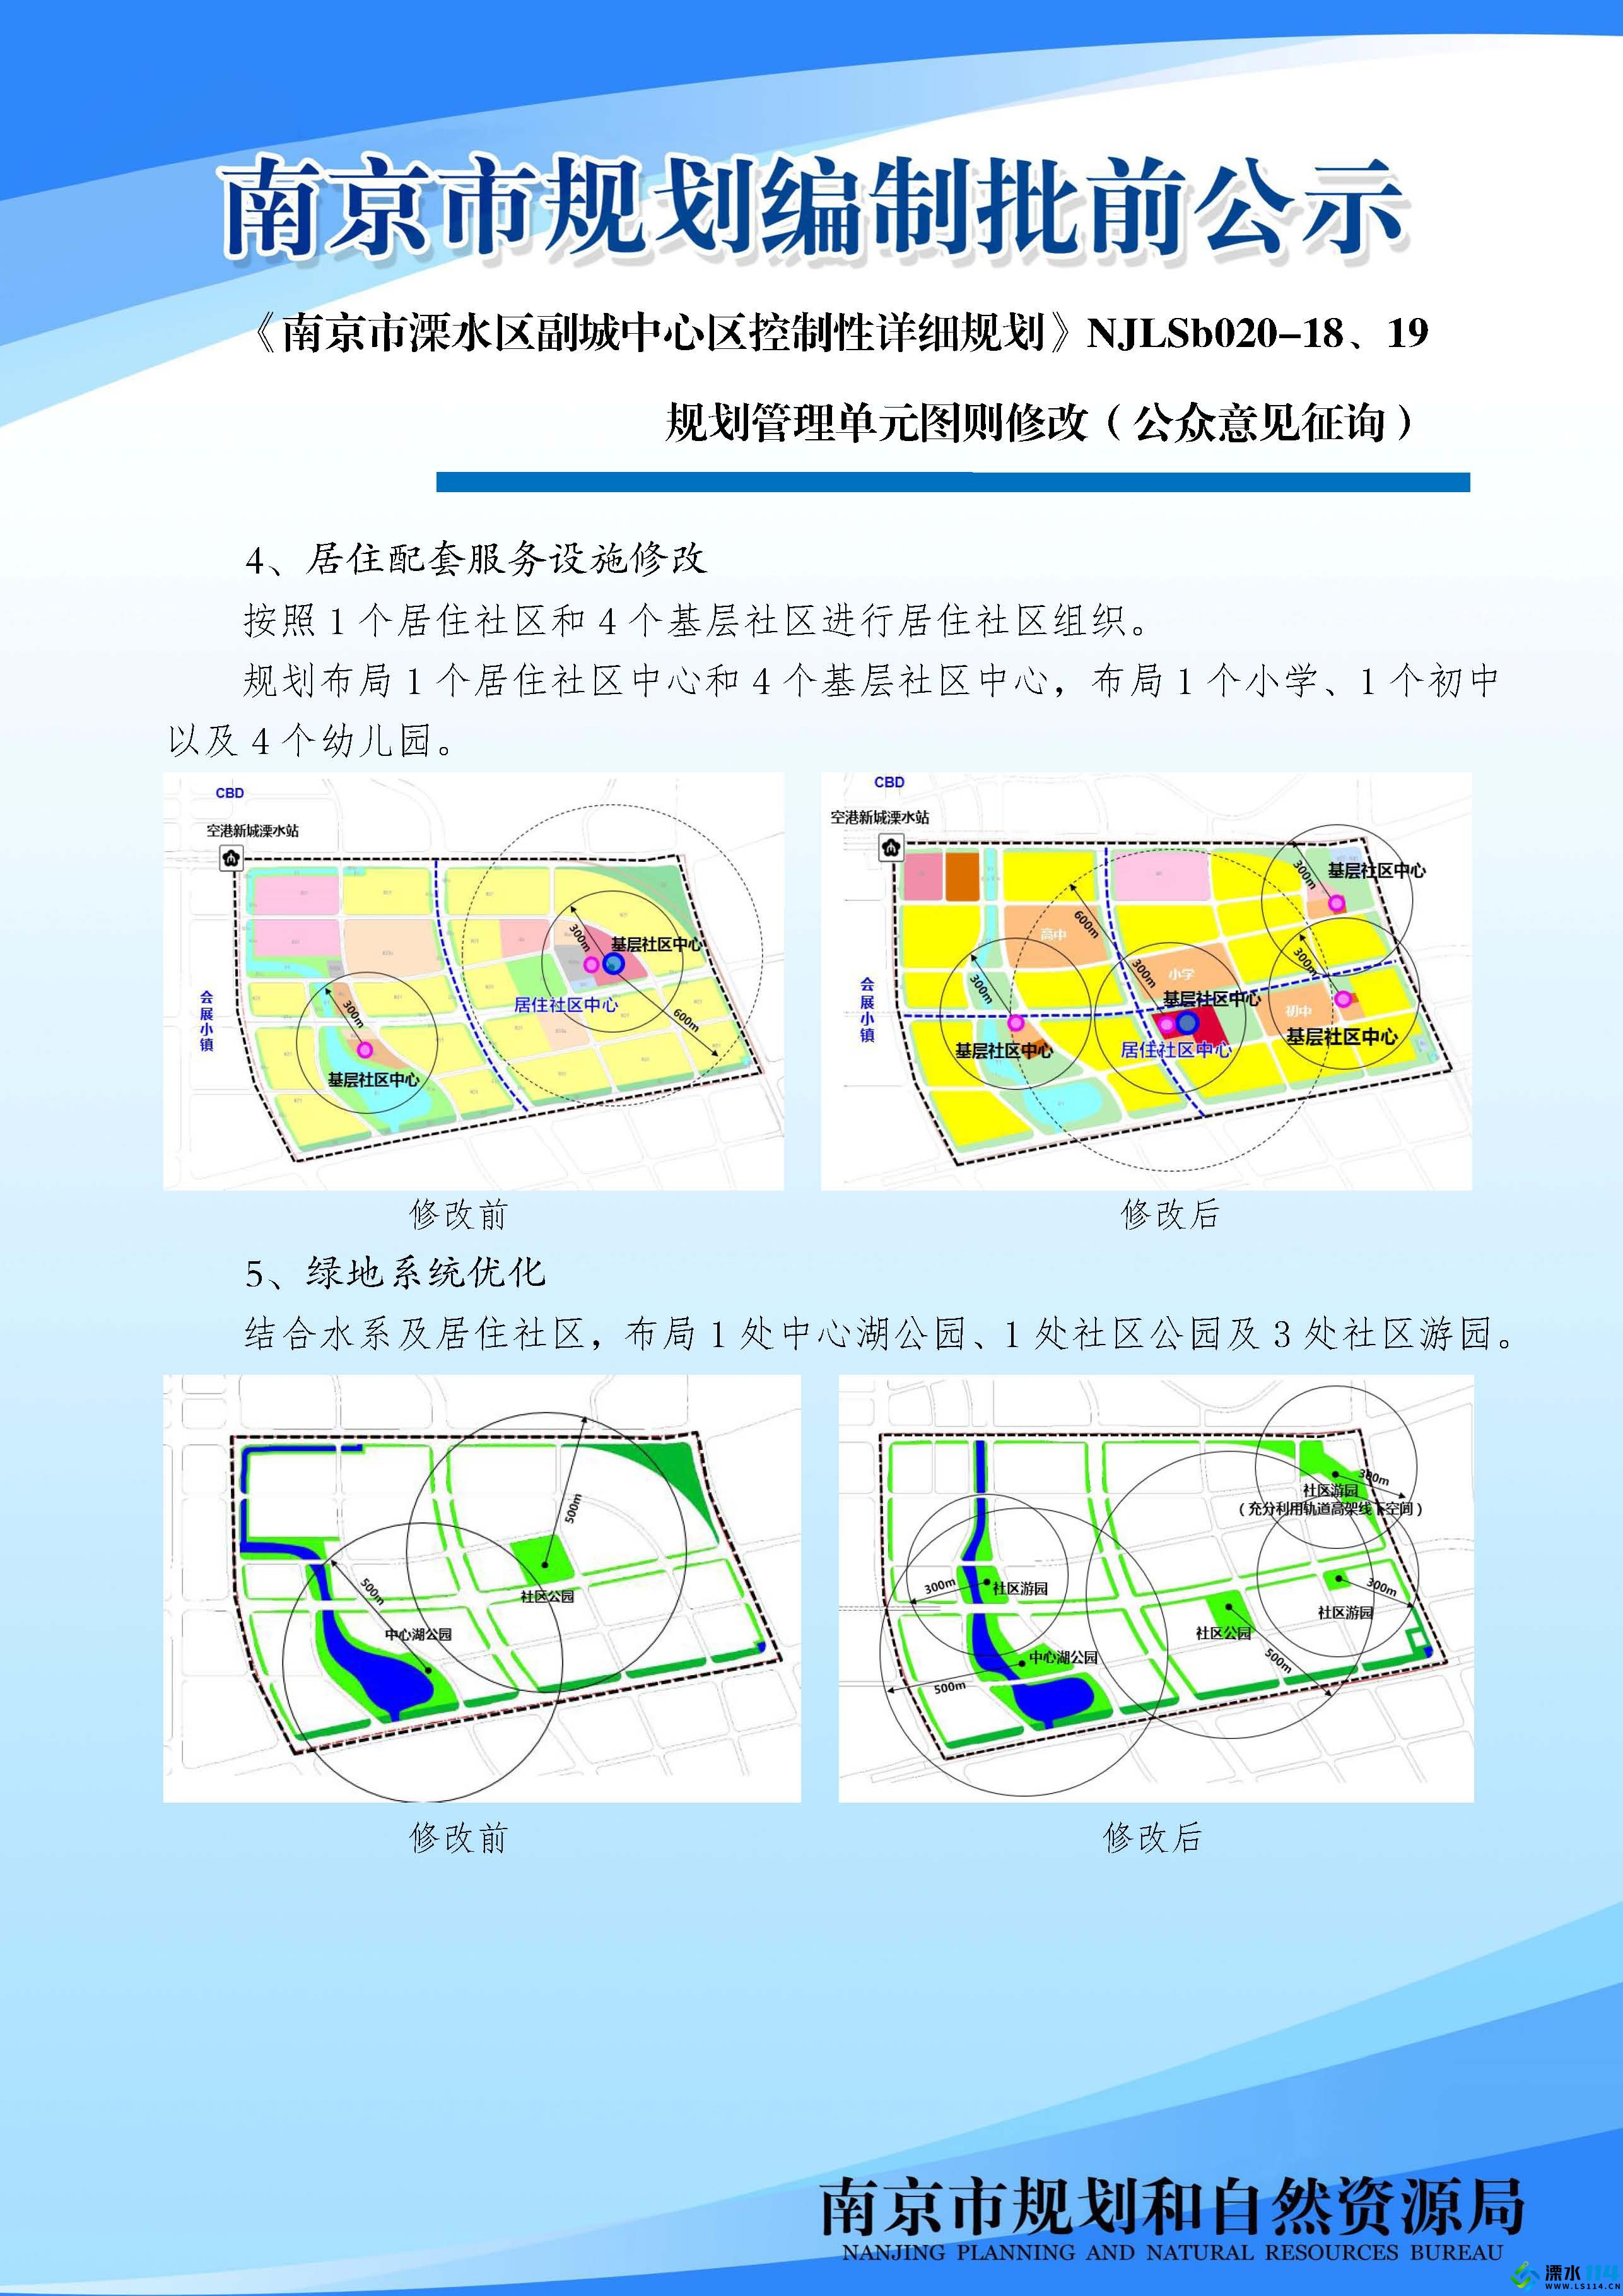 《南京市溧水区副城中心区控制性详细规划》NJLSb020-18、19规划管理单元图则修改（公.jpg